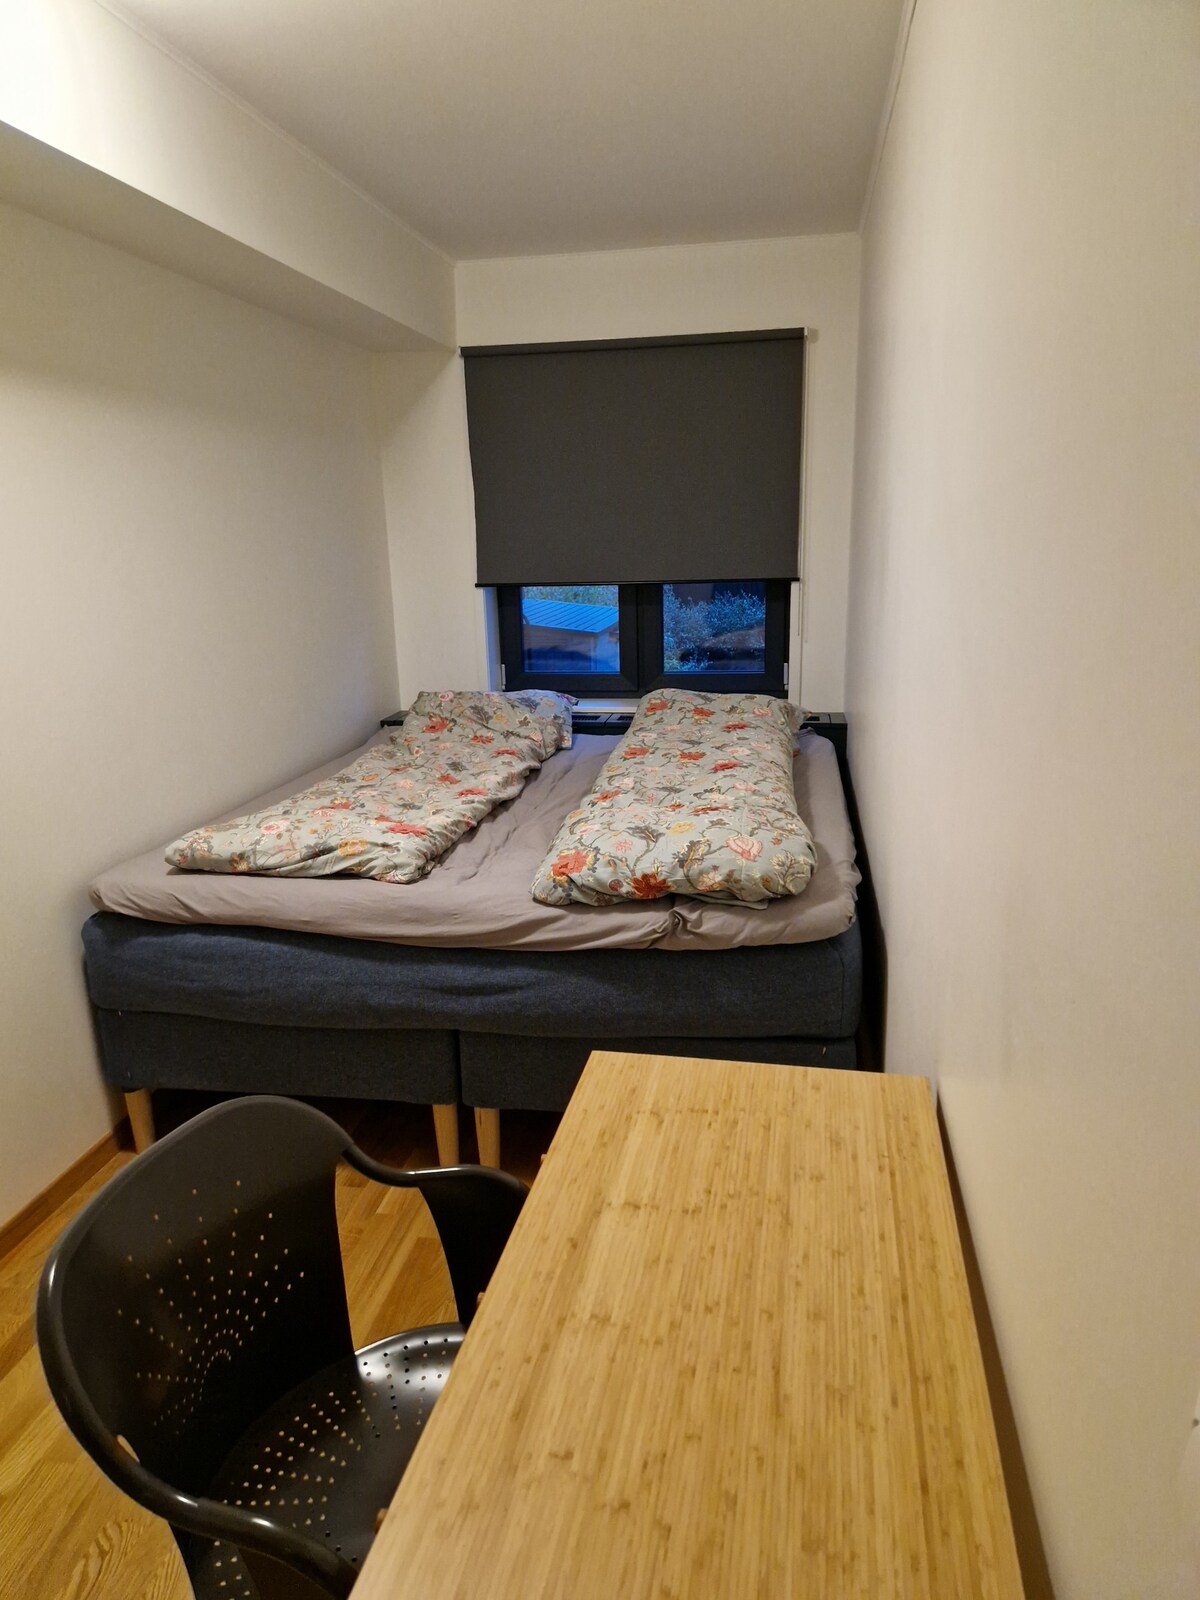 Ny familievennlig leilighet,5 sengeplasser,garasje